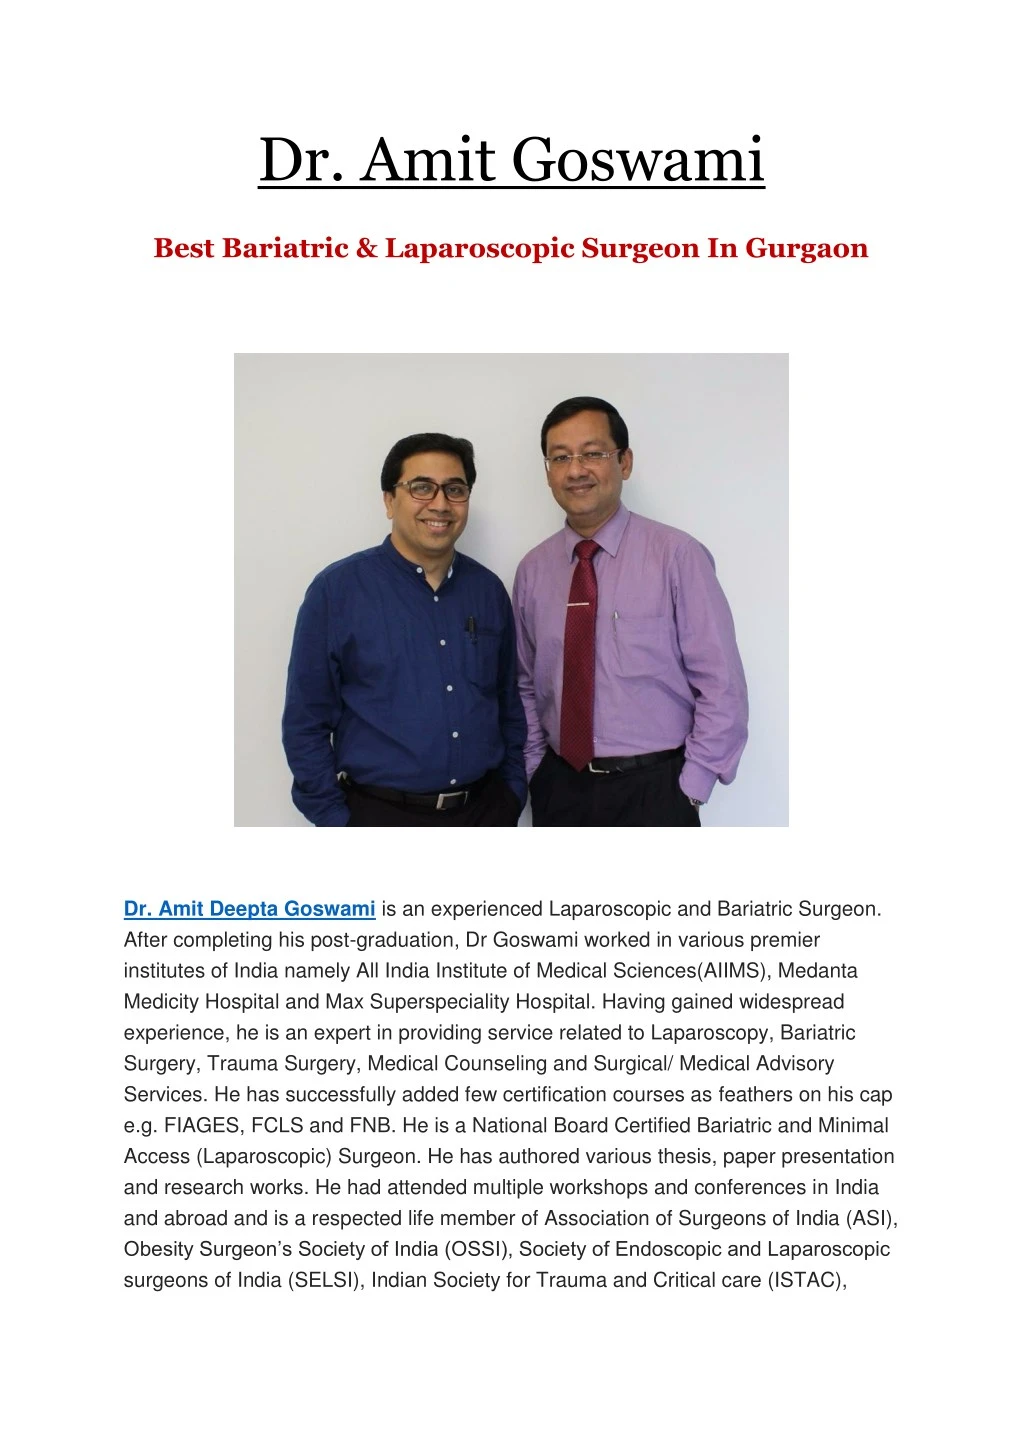 dr amit goswami best bariatric laparoscopic